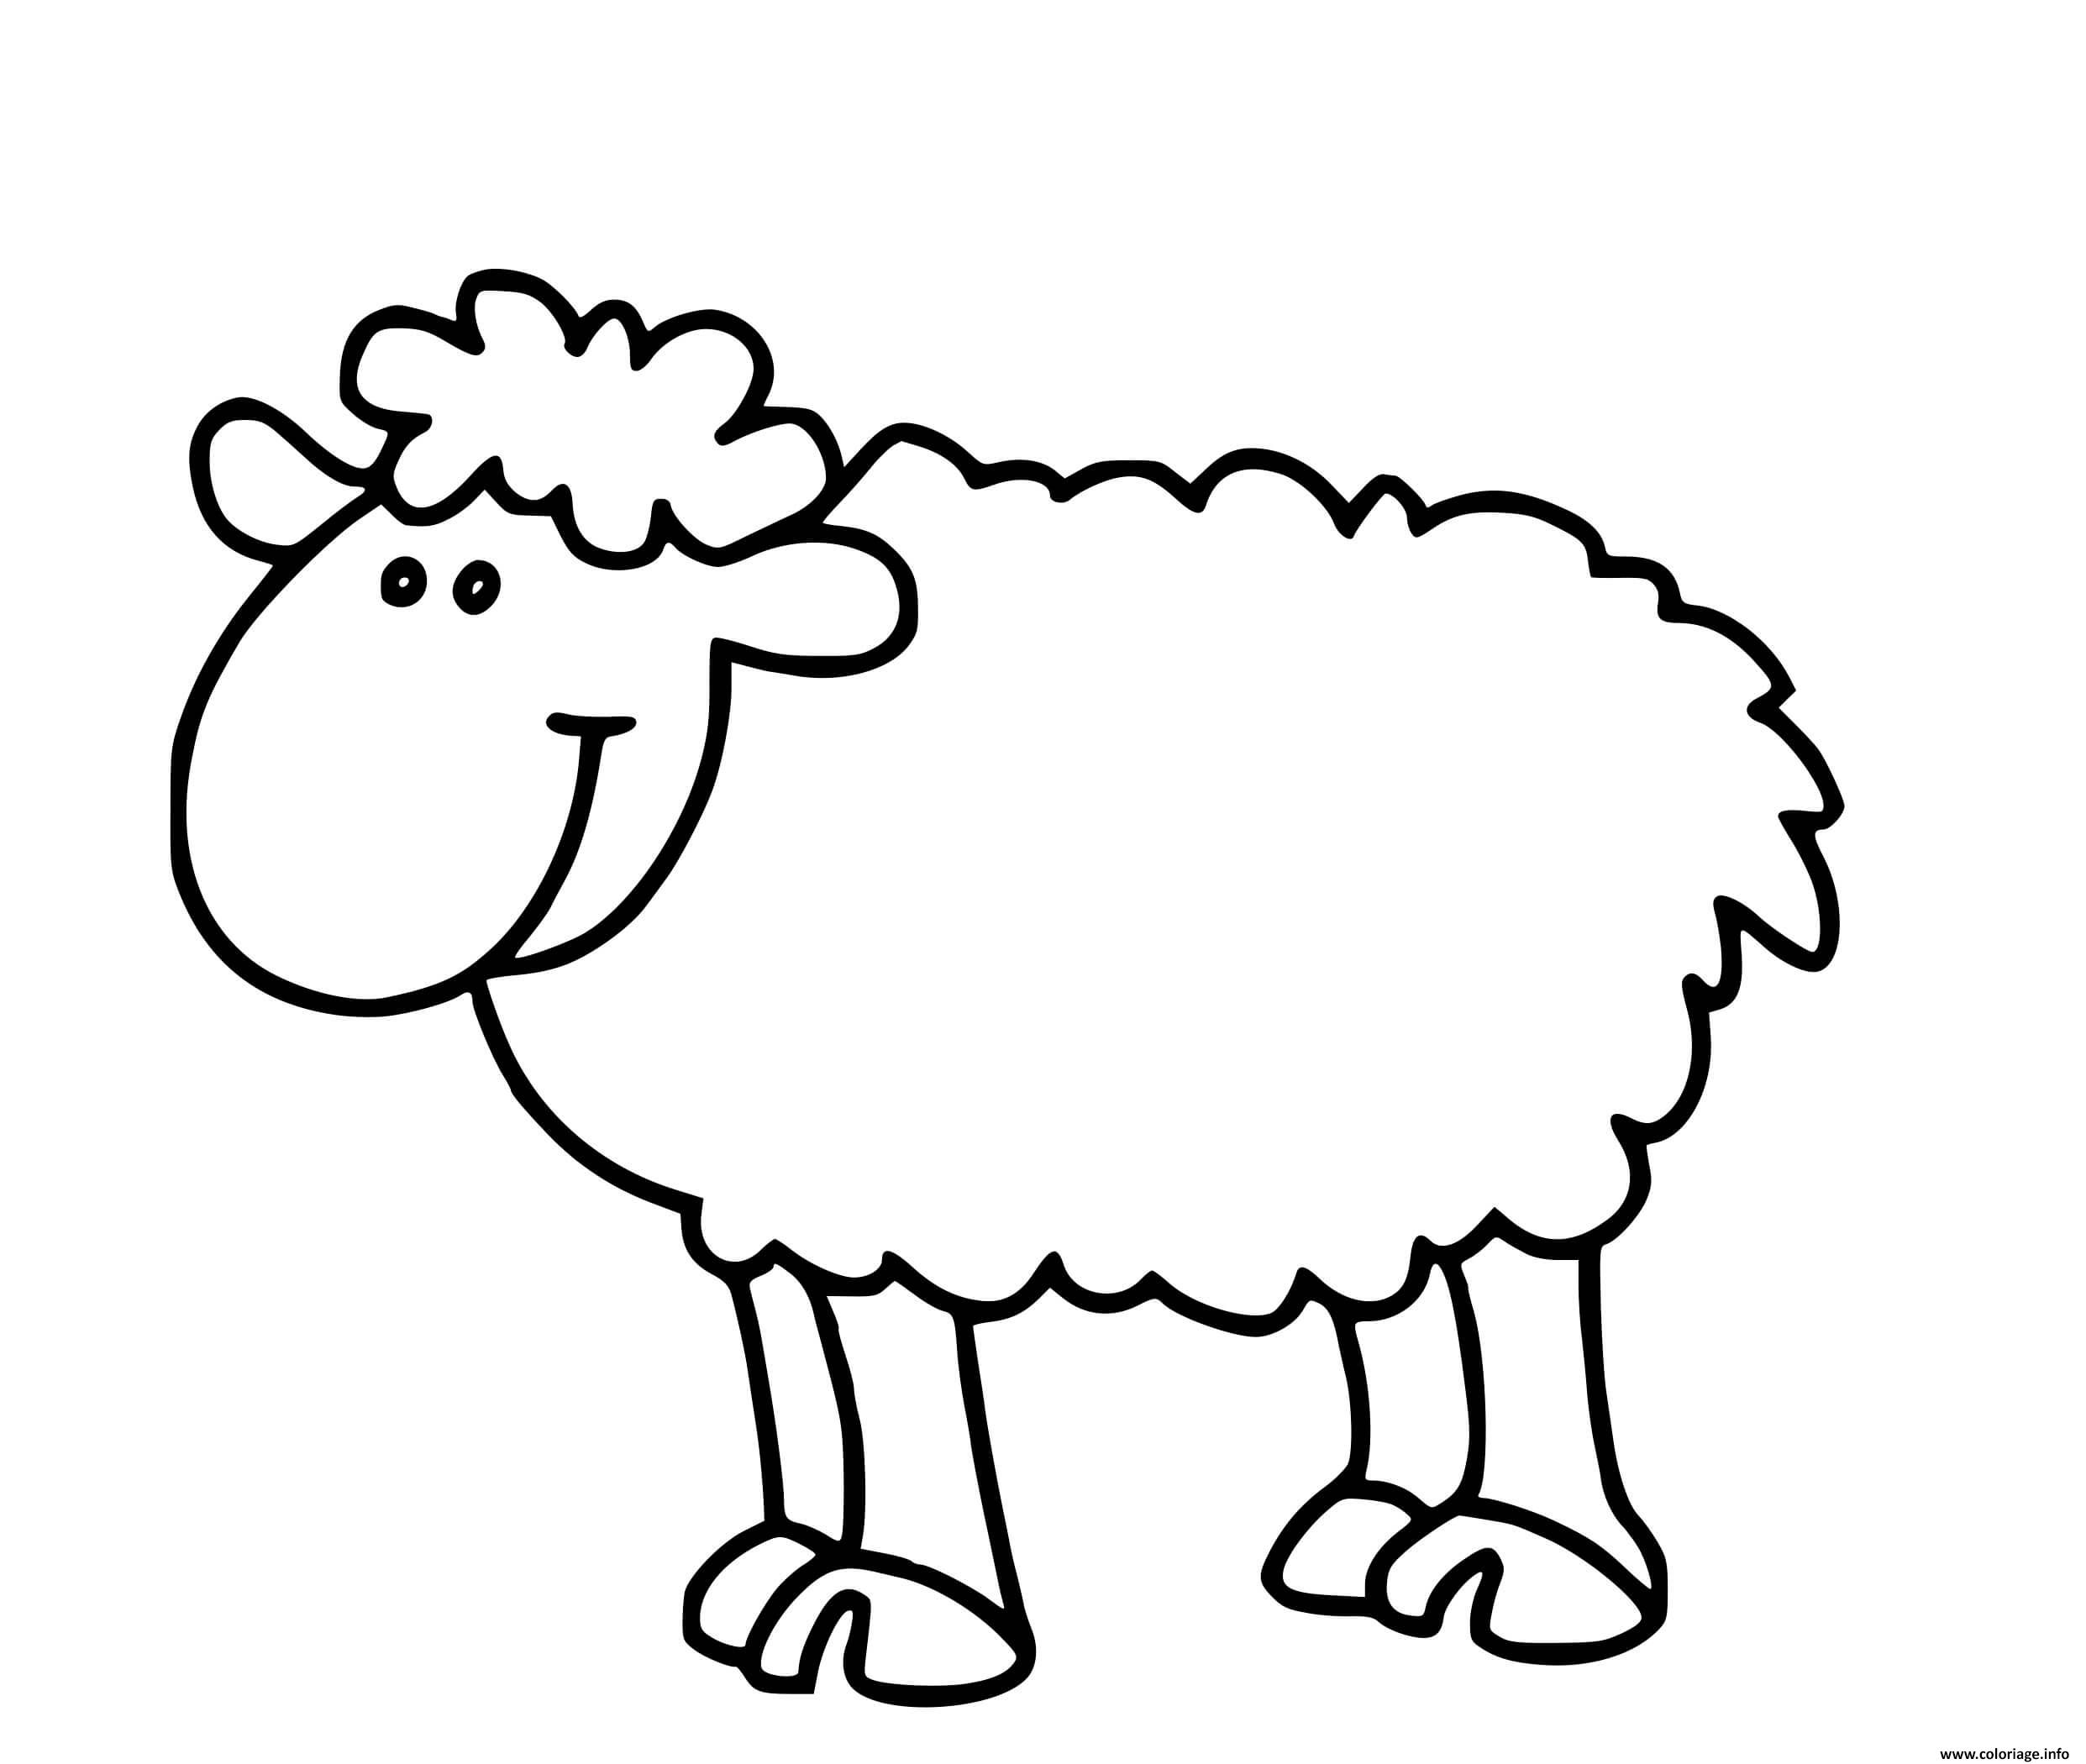 Dessin mouton facile Coloriage Gratuit à Imprimer